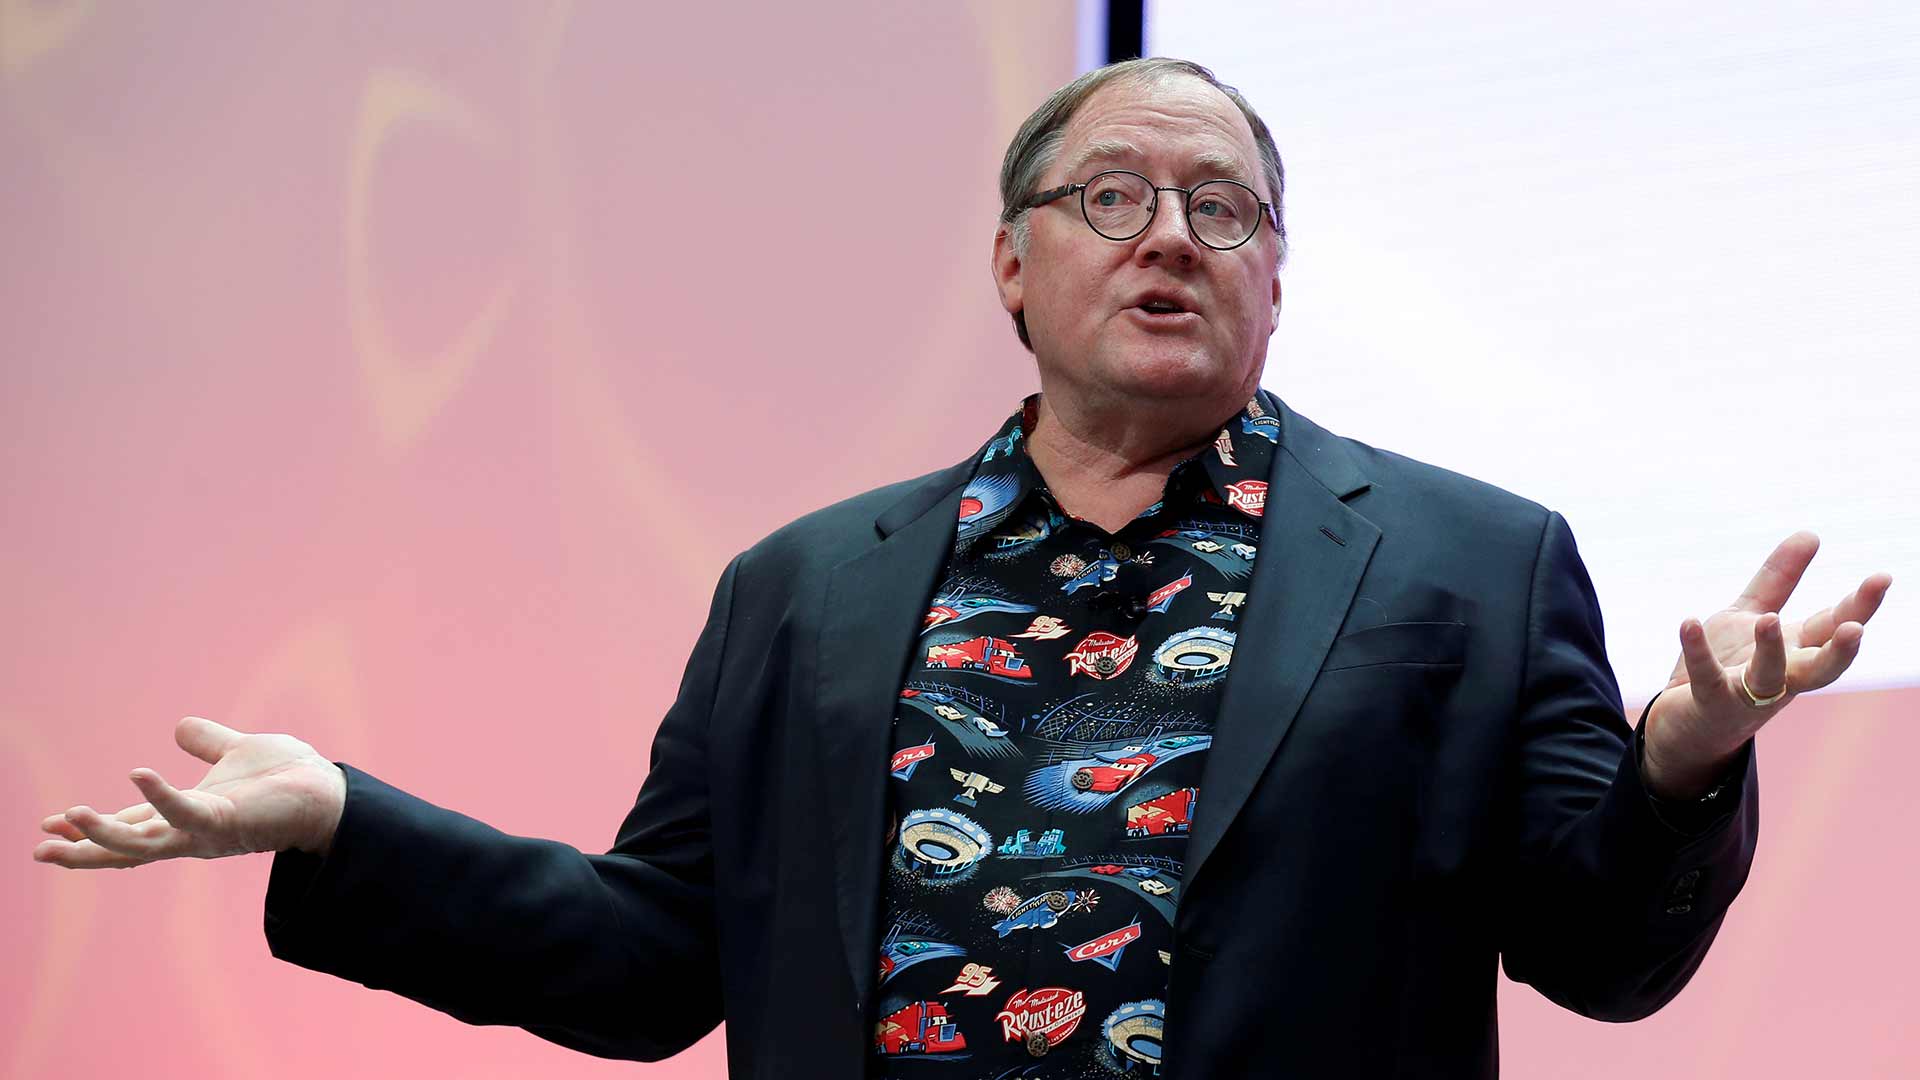 John Lasseter abandona temporalmente Pixar por propasarse con su personal